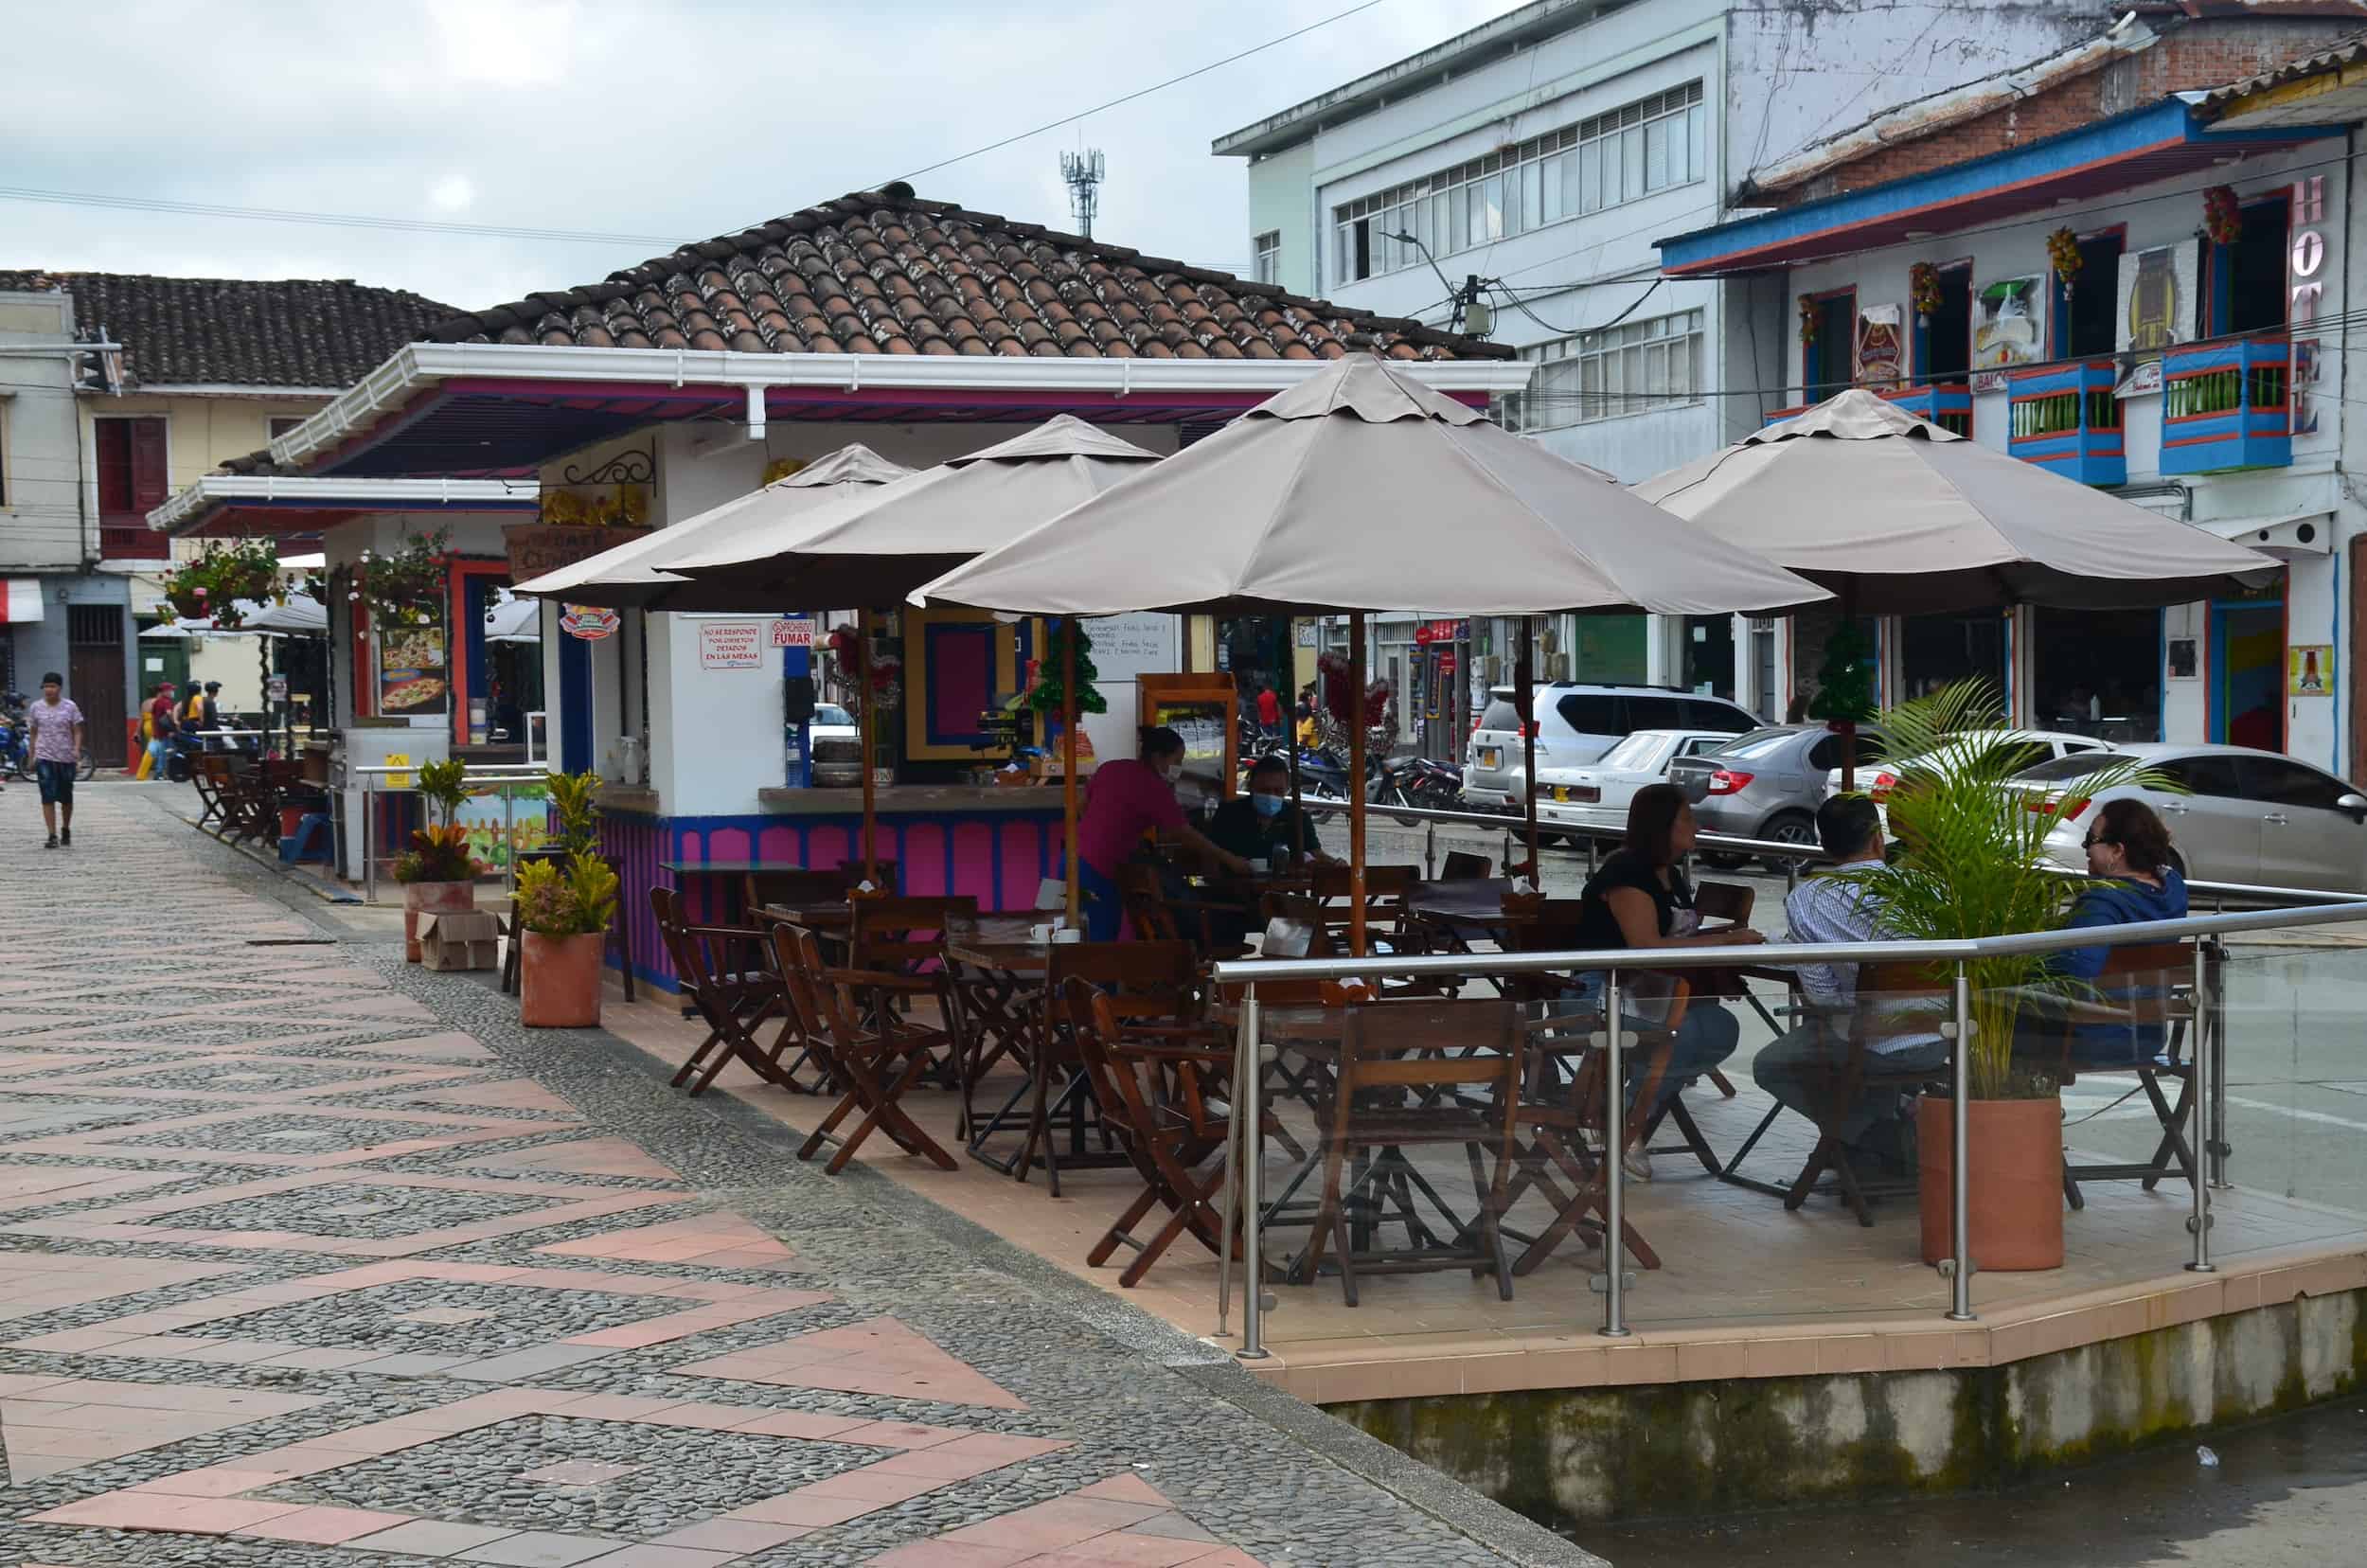 Café Cumbarco in Sevilla, Valle del Cauca, Colombia